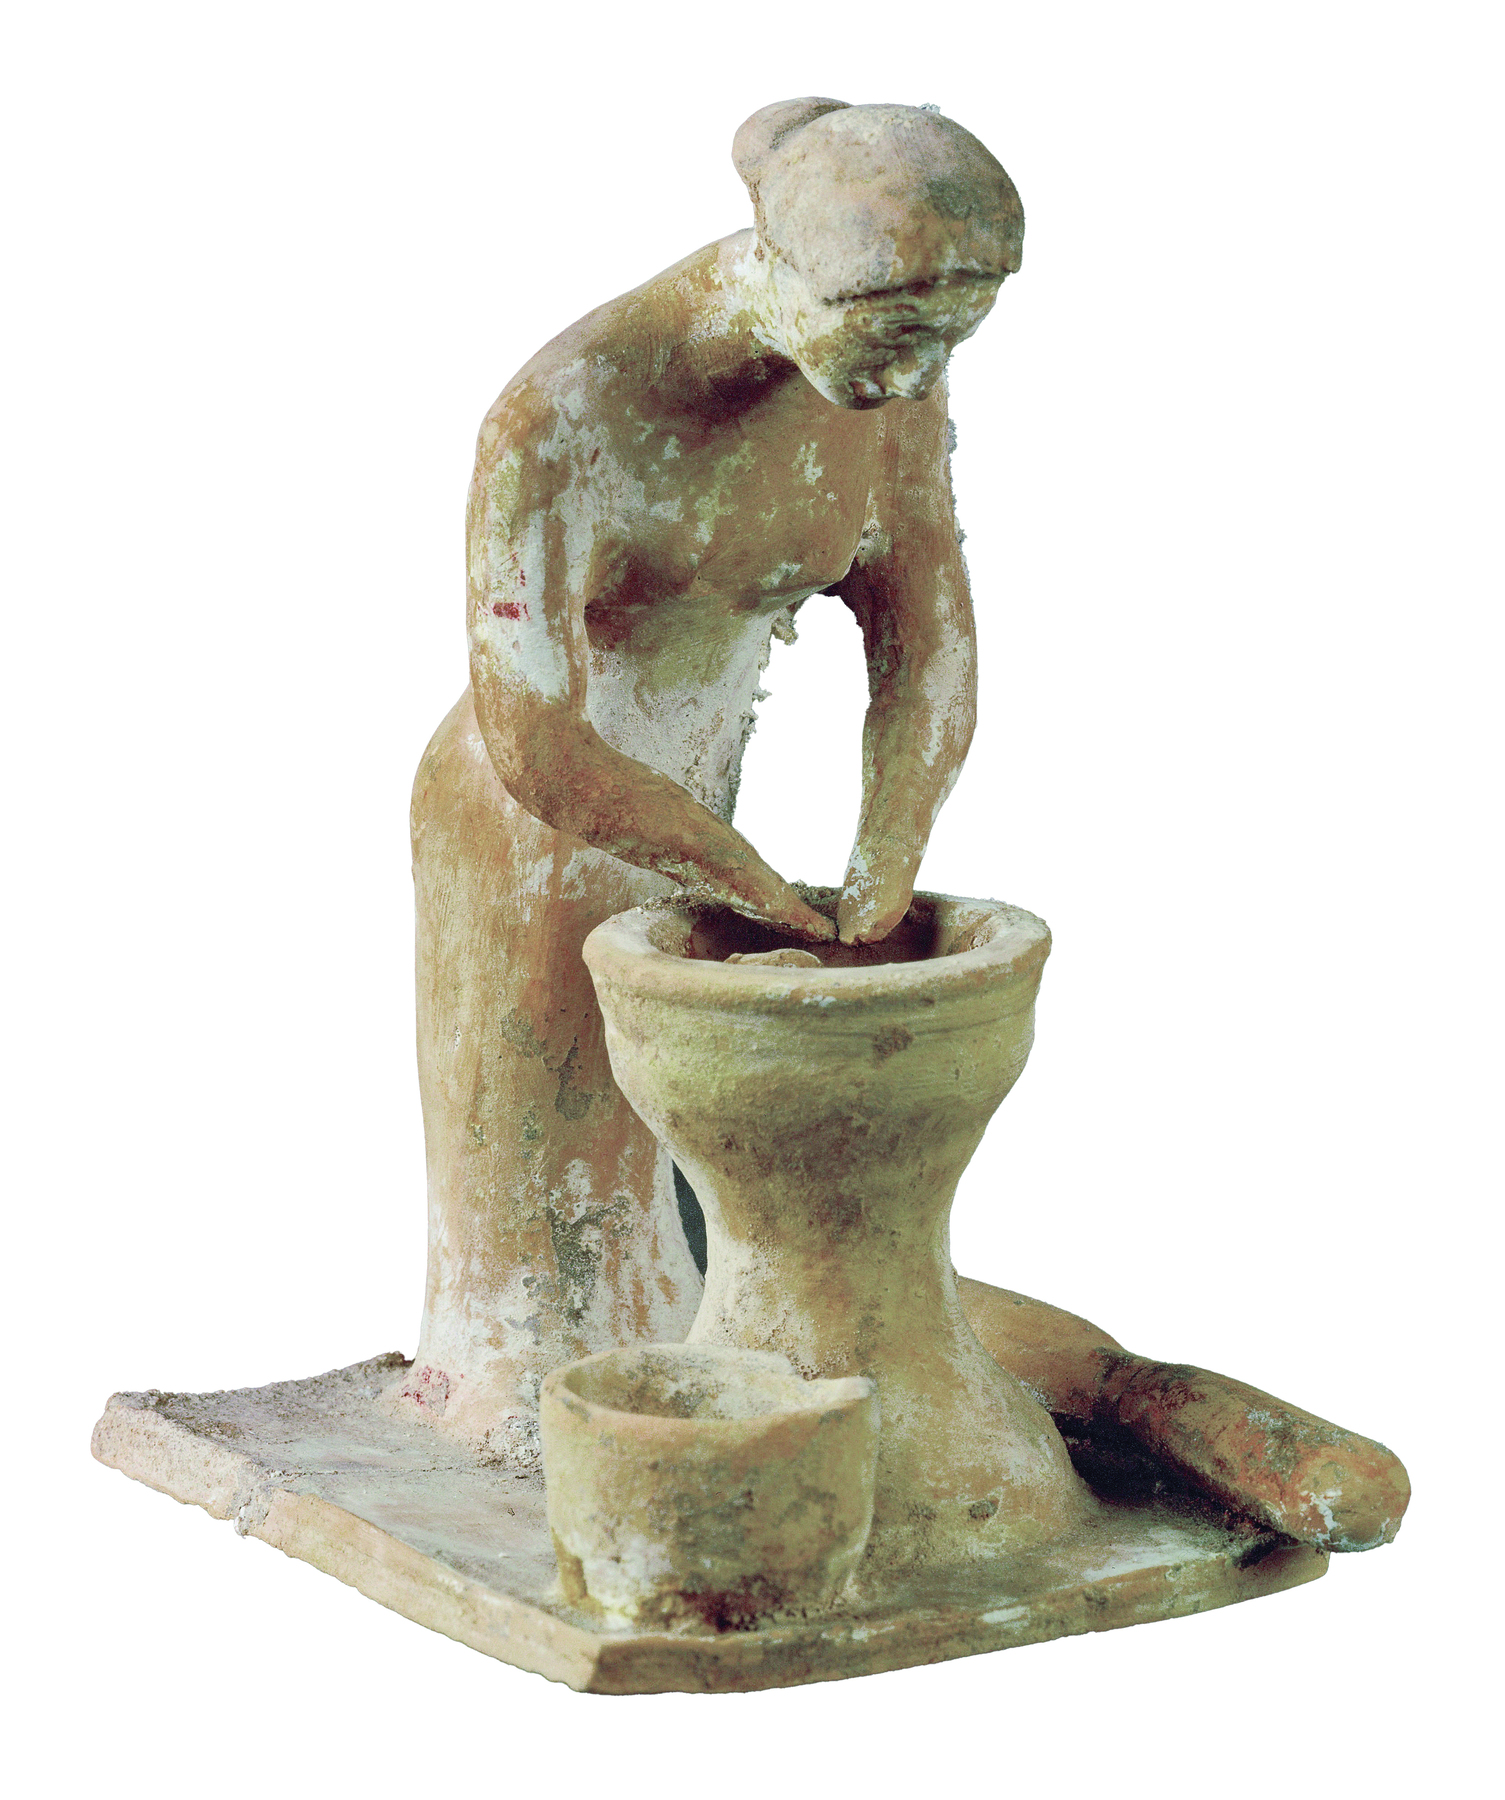 Fotografia. Escultura de uma mulher em pé encurvada com as mãos dentro de um grande recipiente com um recipiente menor ao lado.